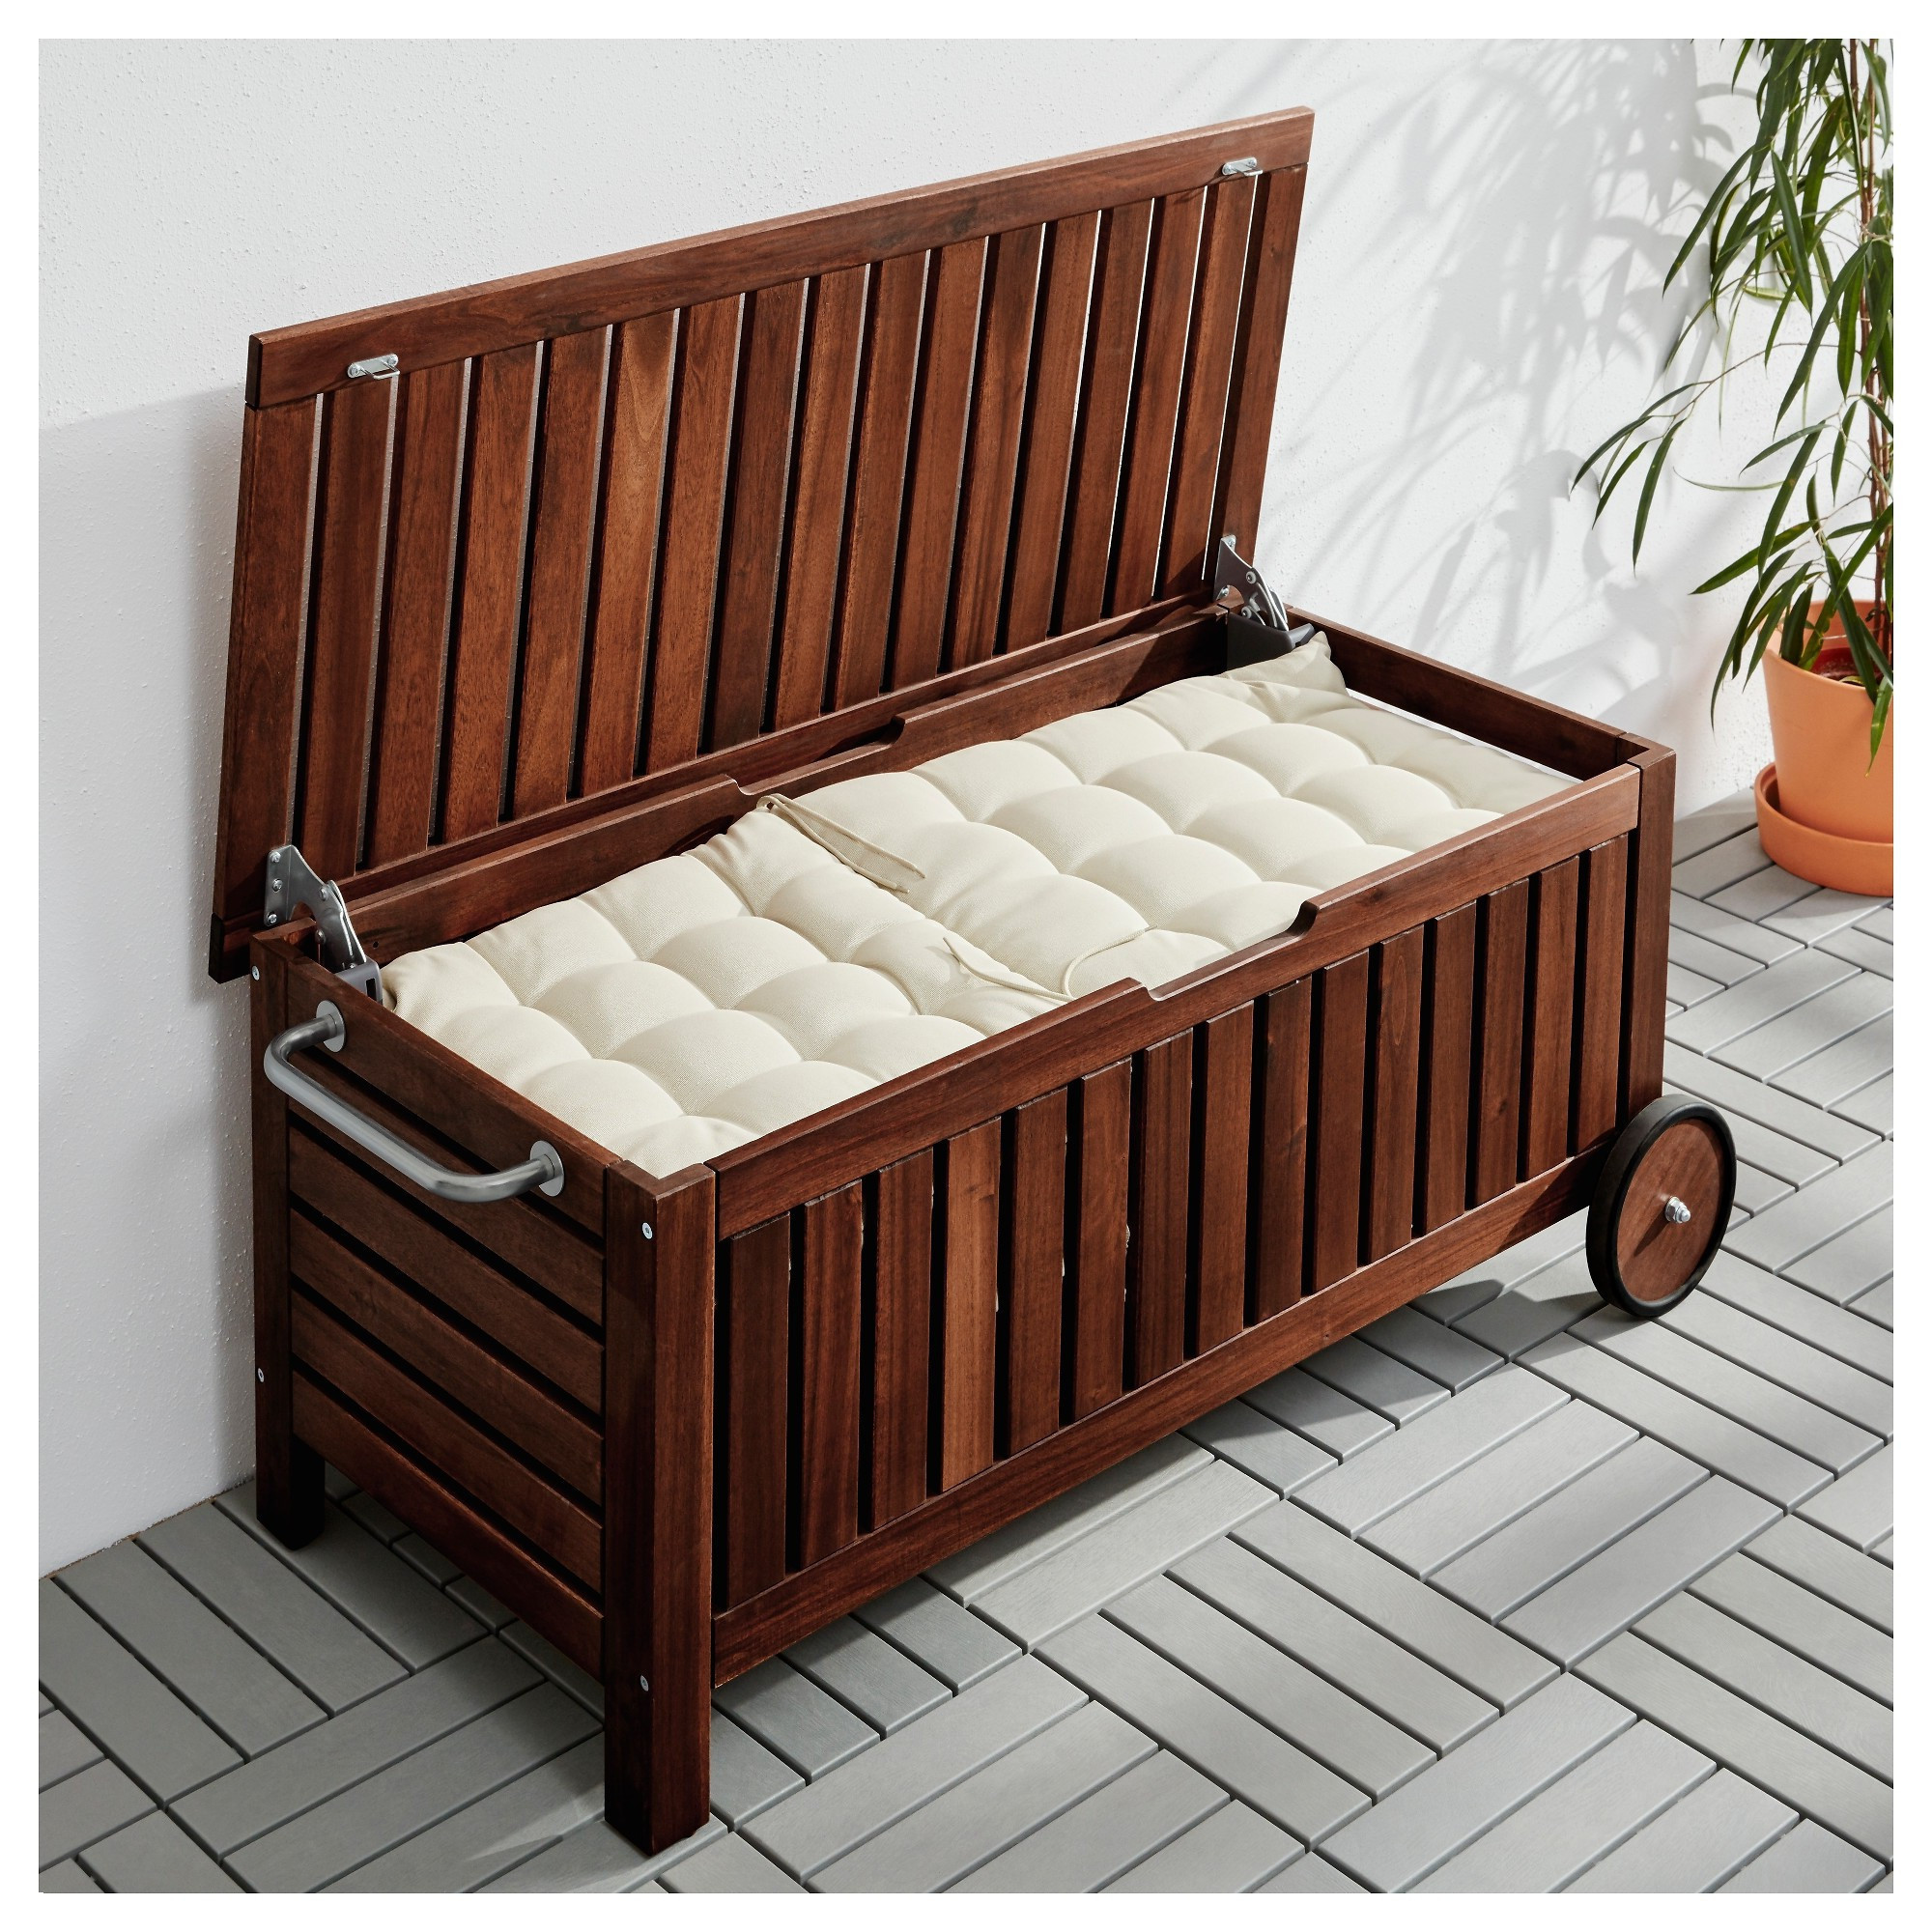 Modern Outdoor Storage Bench
 Outdoor Storage Seat Garden Solutions Furniture Cushion